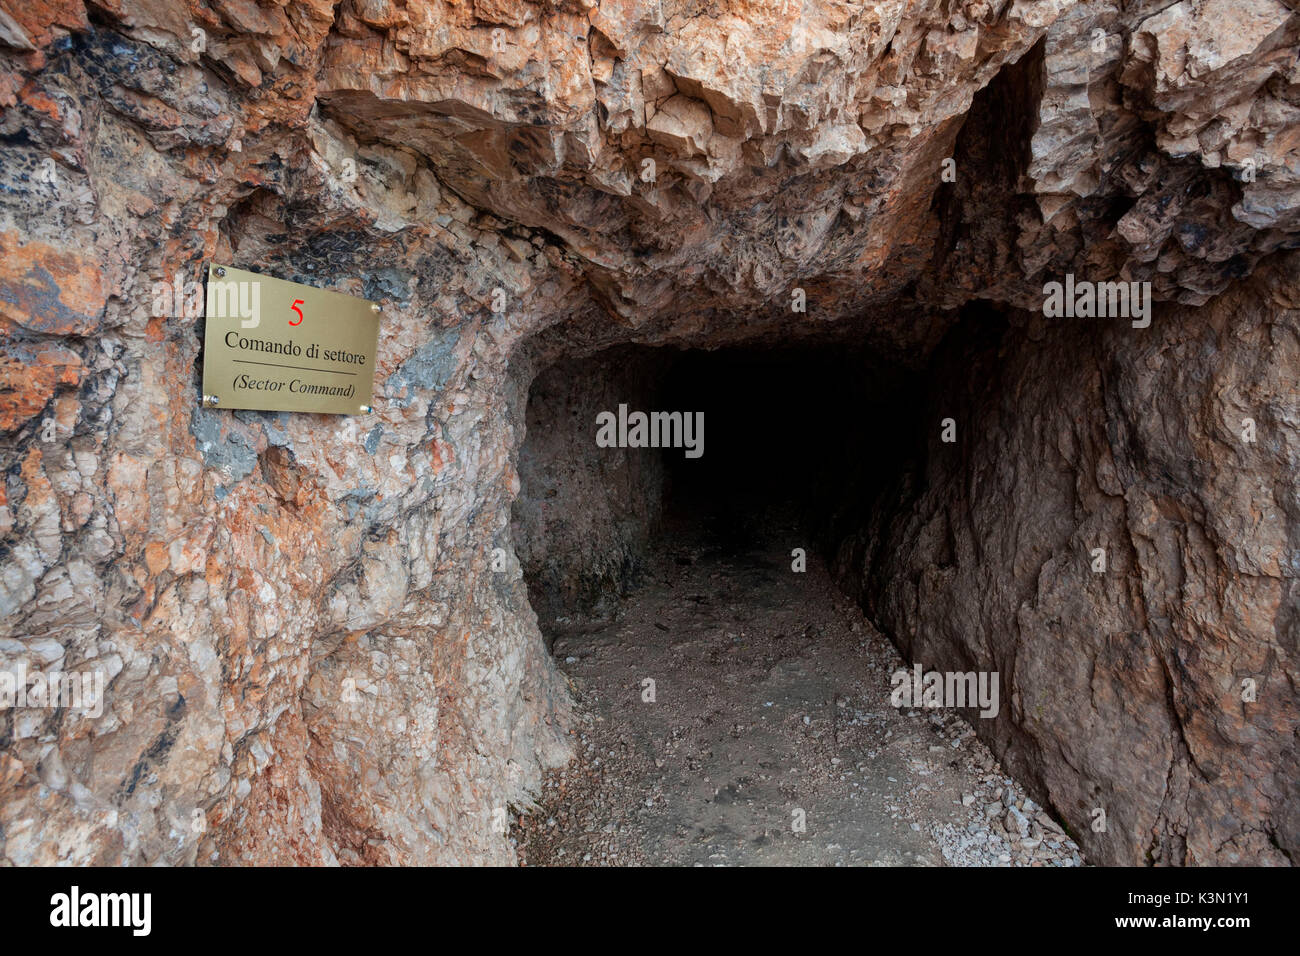 Grotta "Comando di settore' area monumentale di Punta Serauta, Marmolada, Dolomiti Foto Stock